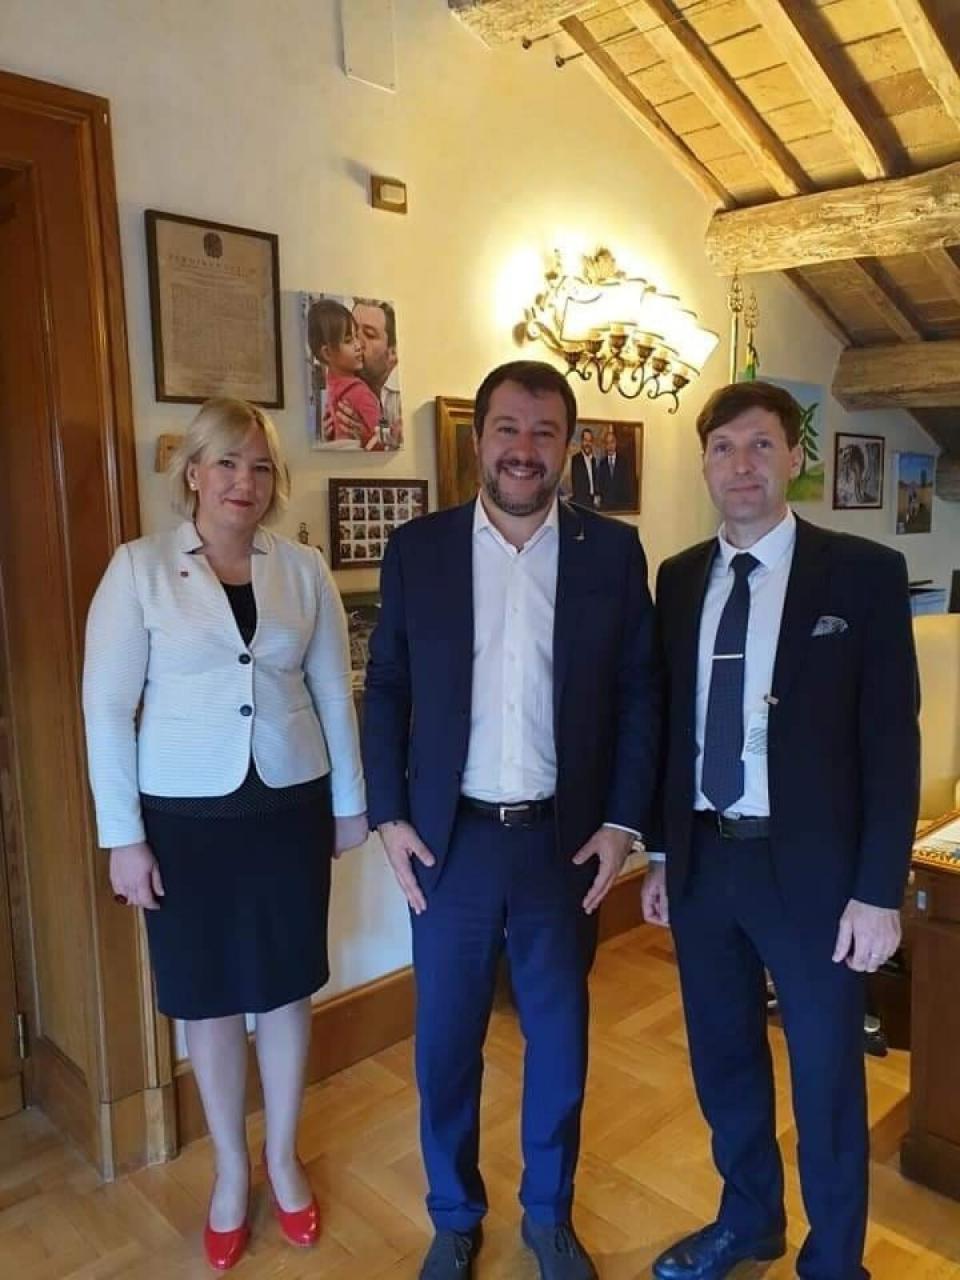 VIIMASEL VÄLISREISIL enne koroonat. 2019. aasta novembris kohtusid Eeva ja Martin Roomas ­Itaalia paremäärmuslaste liidri Matteo Salviniga, kes kuu aega varem oli kaotanud siseministri koha. Saapamaa lembus pani paari õppima ka itaalia keelt.